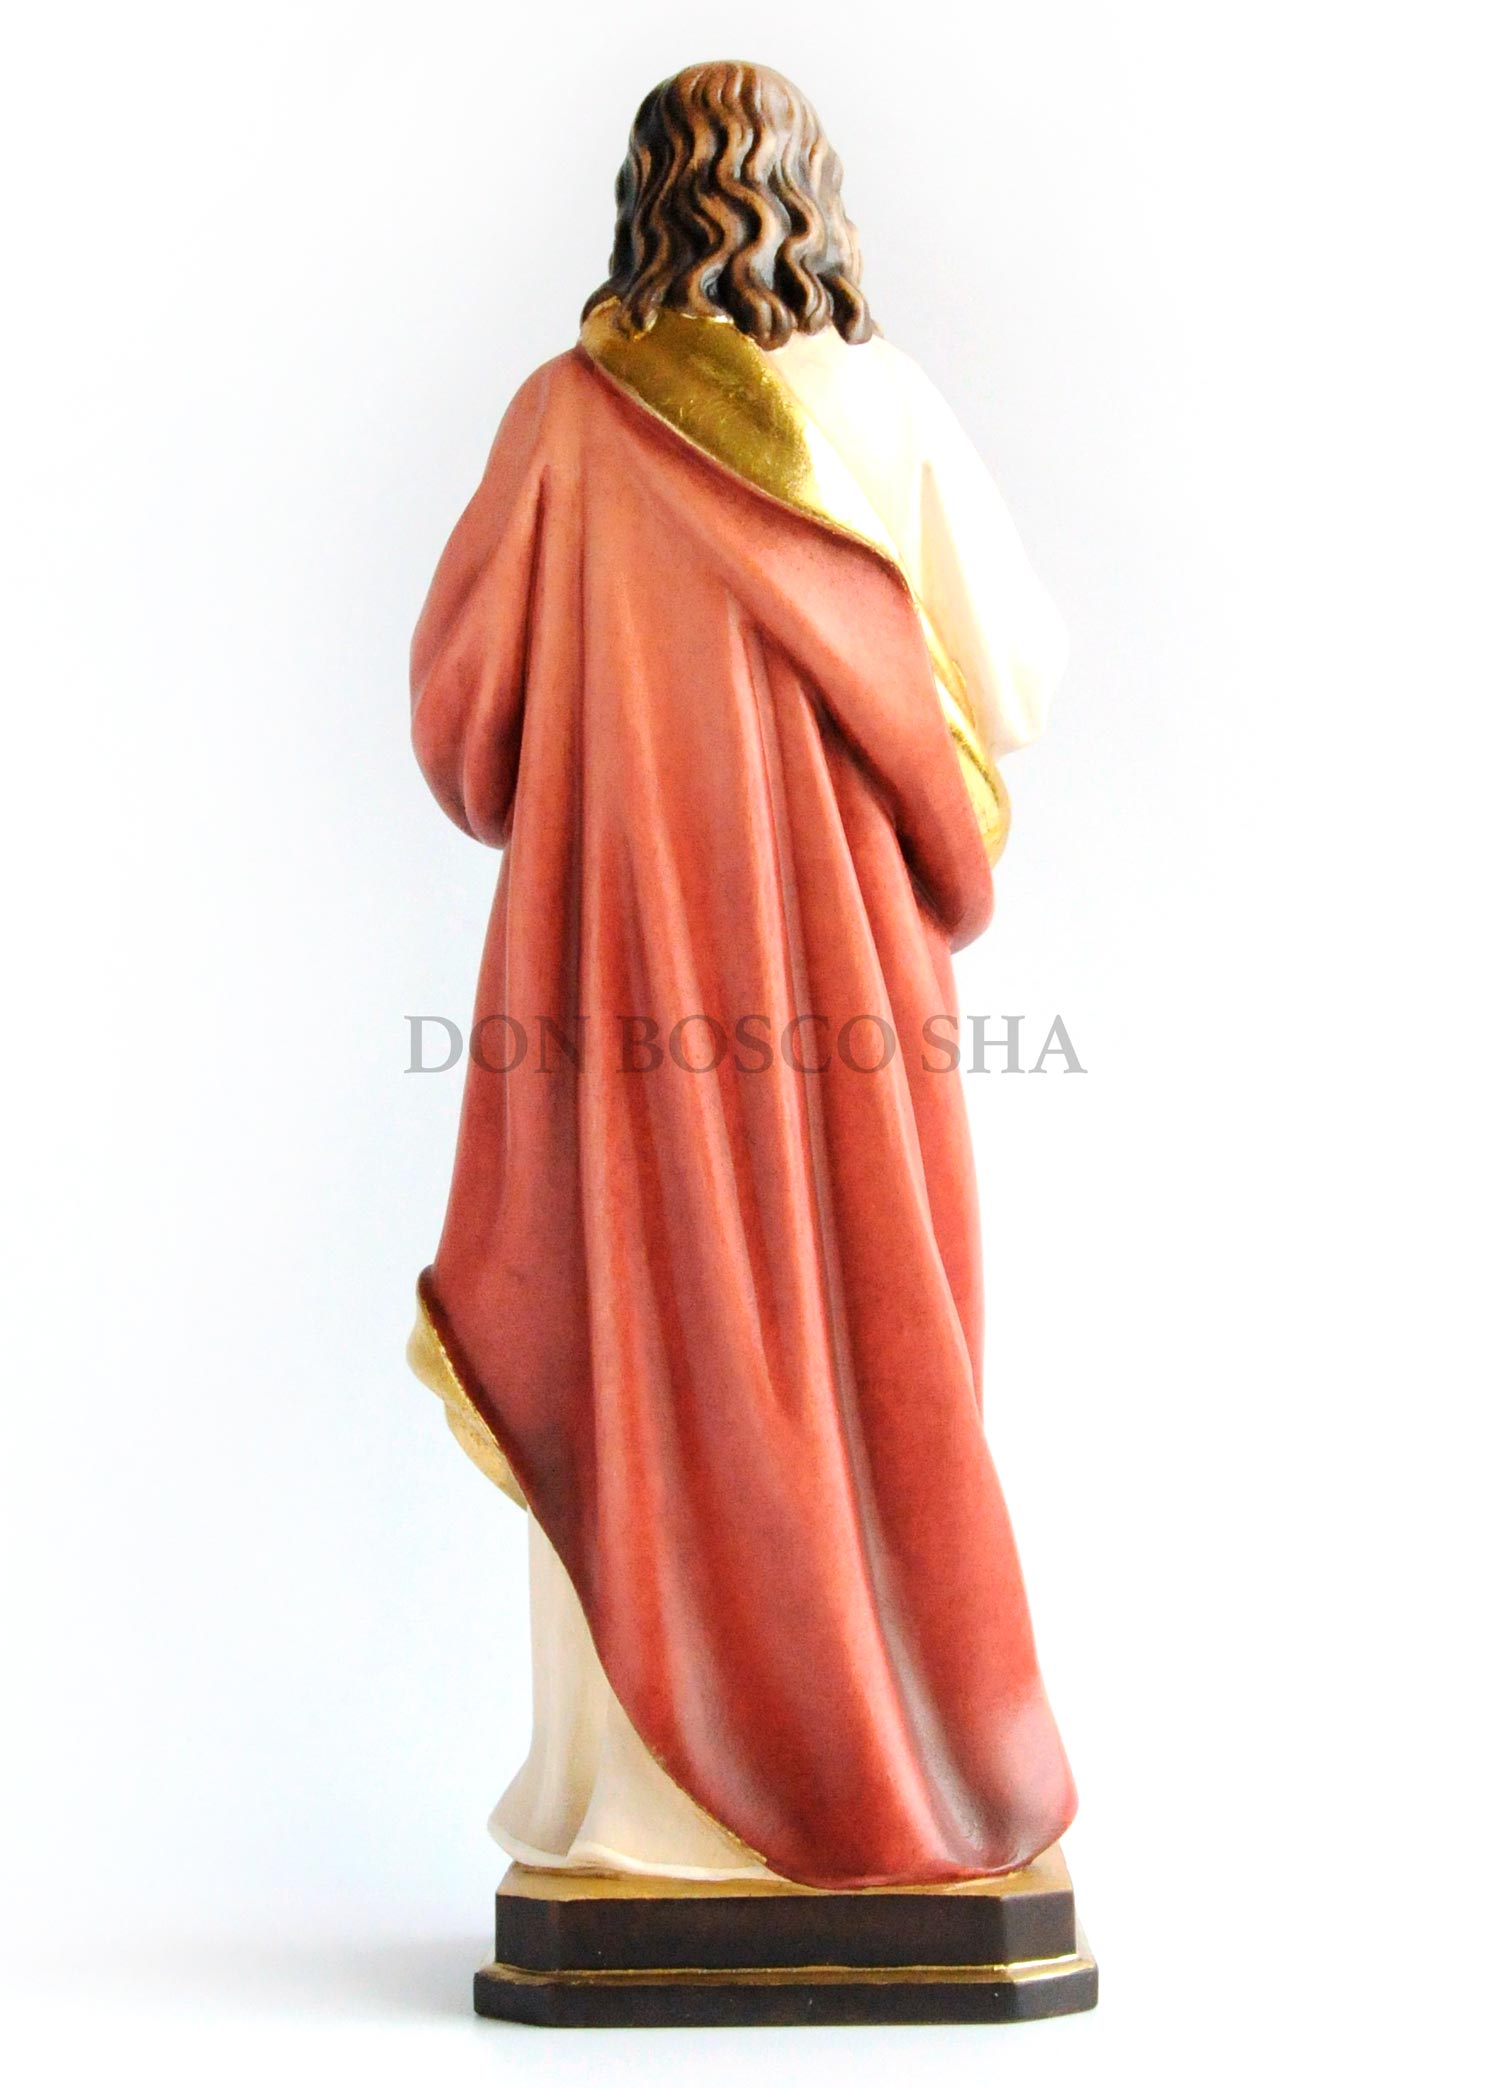 木彫り み心のイエス像 カラー 約30cm ※店頭在庫1点のみ - ドン・ボスコ社